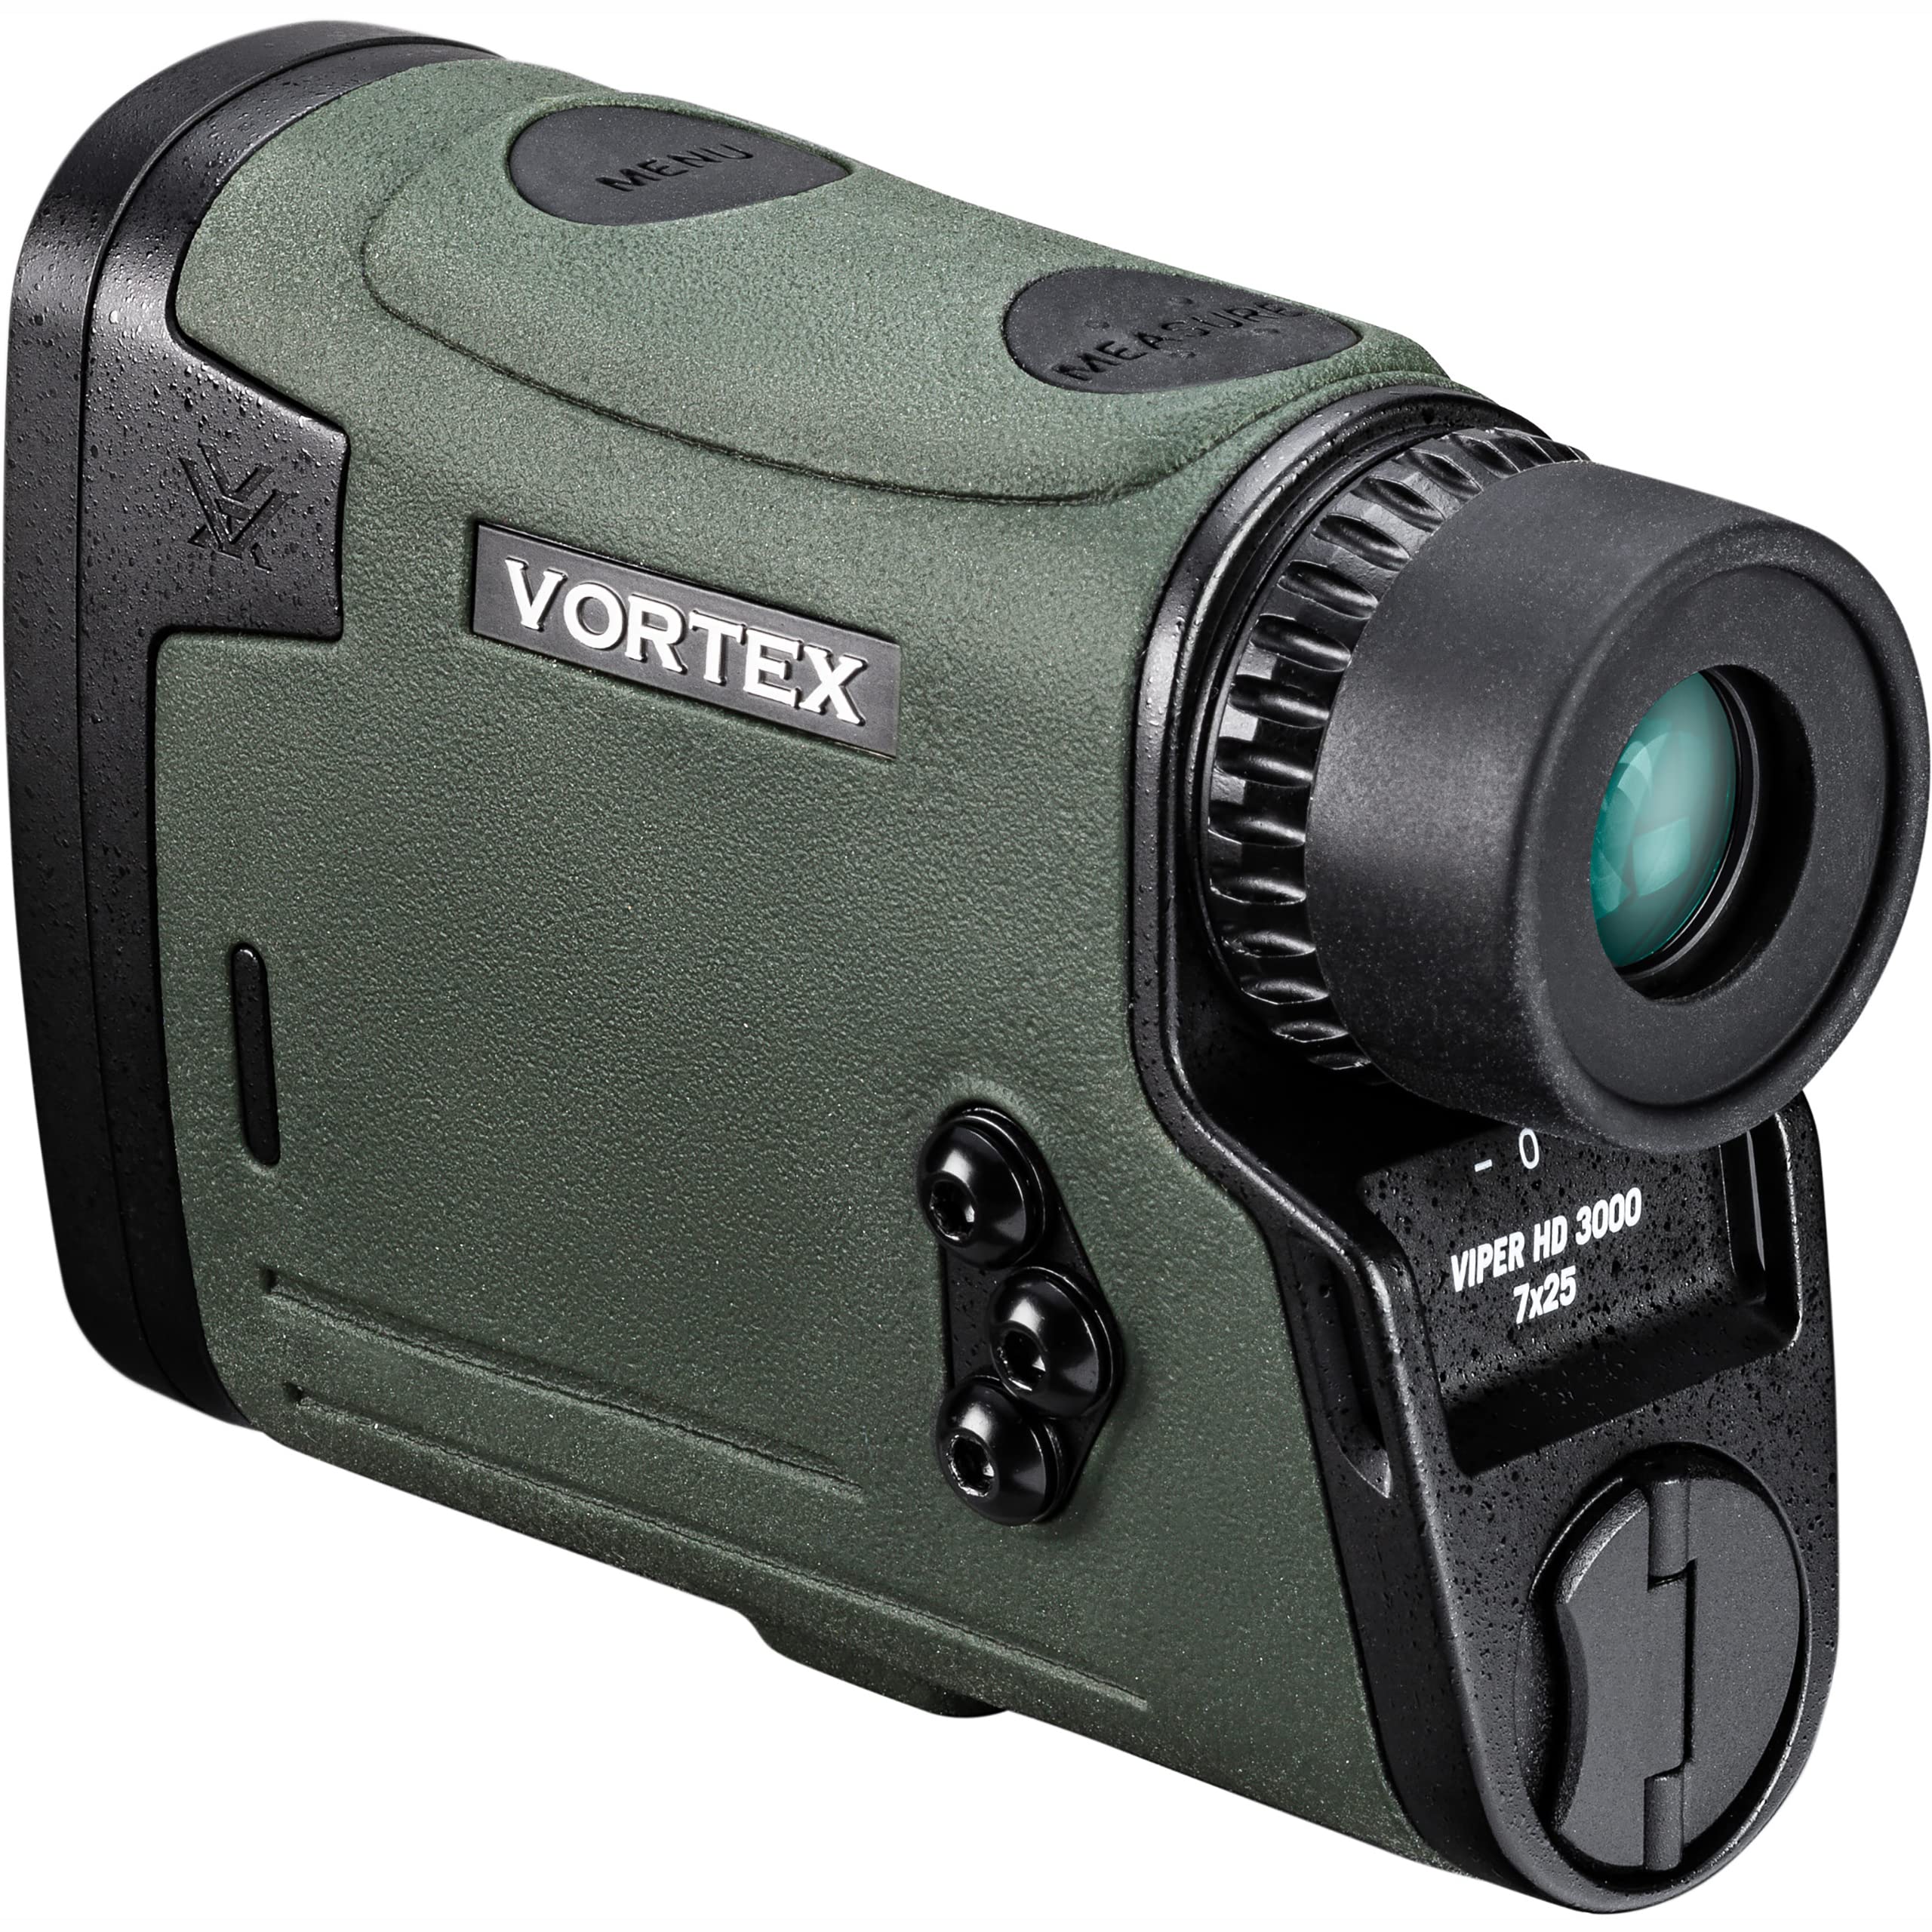 Vortex Optics Viper HD 3000 Laser Rangefinder